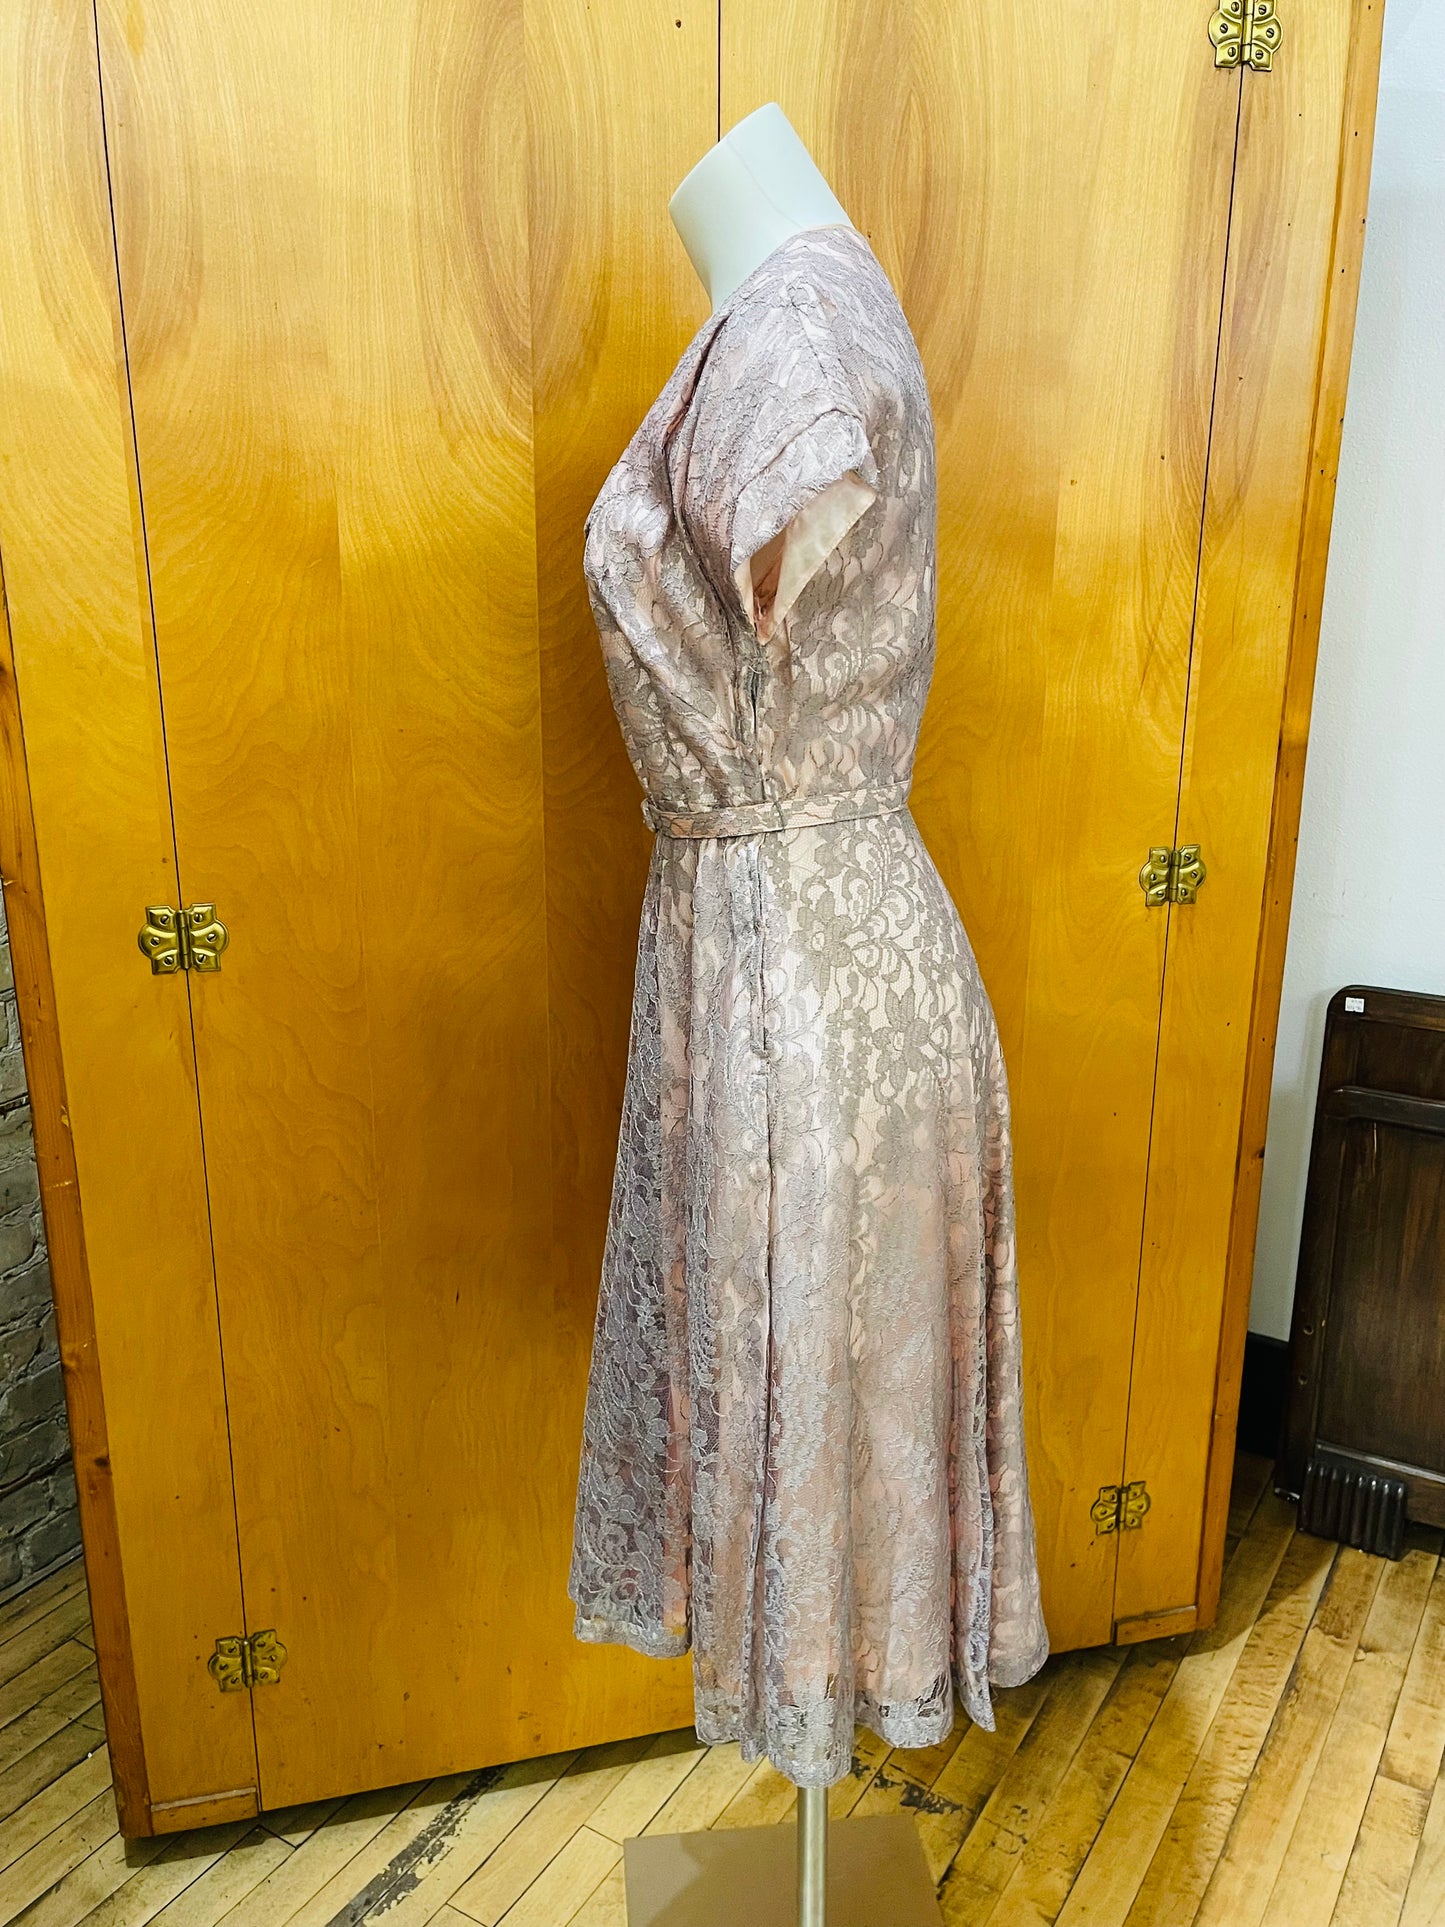 50s Mauve Lace Dress